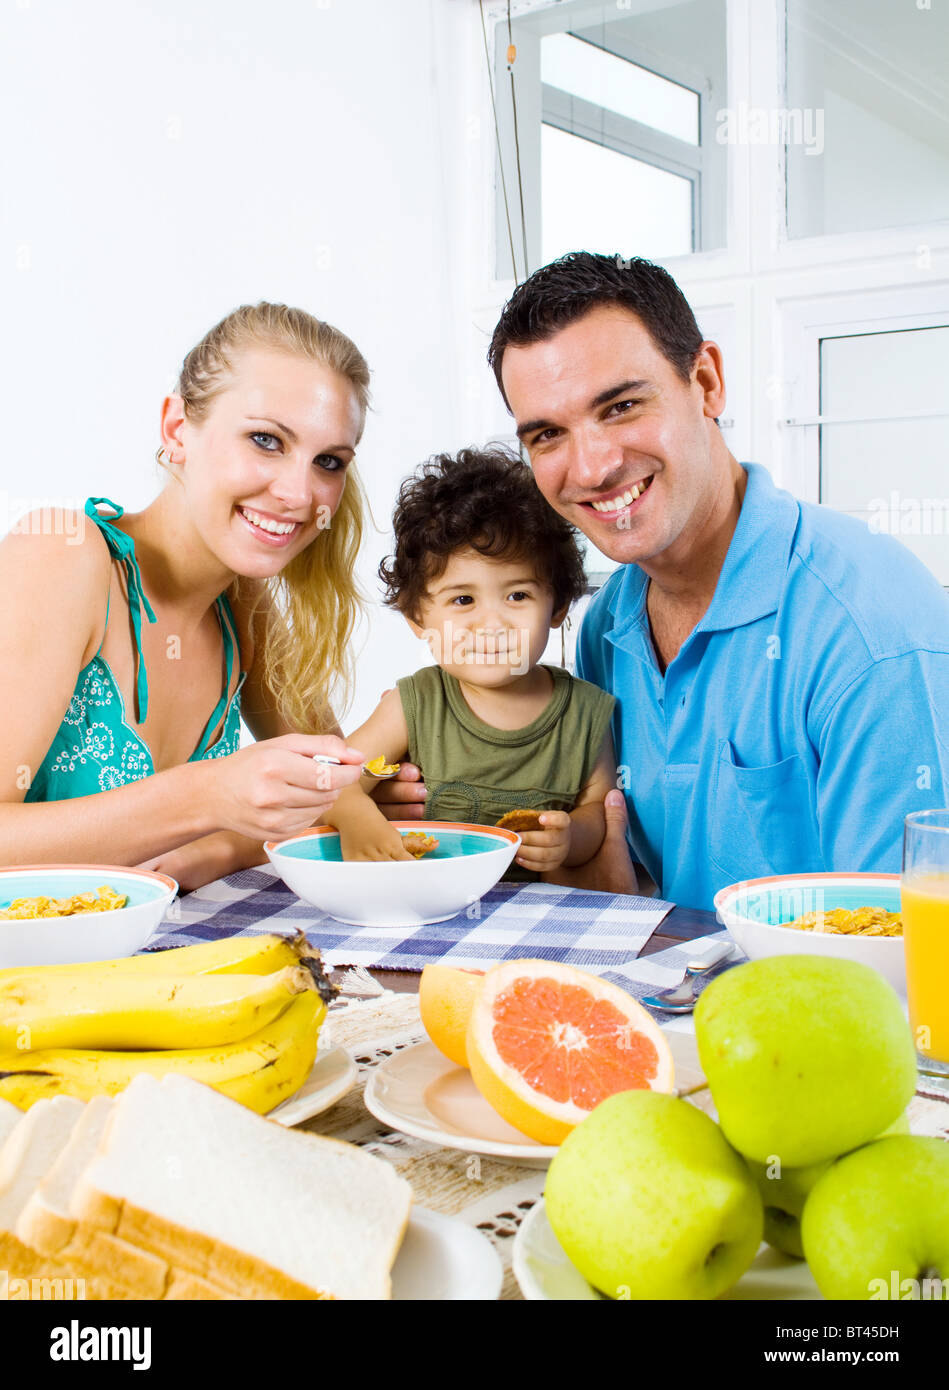 glückliche junge Eltern und Kleinkind Boy am Frühstückstisch Stockfoto